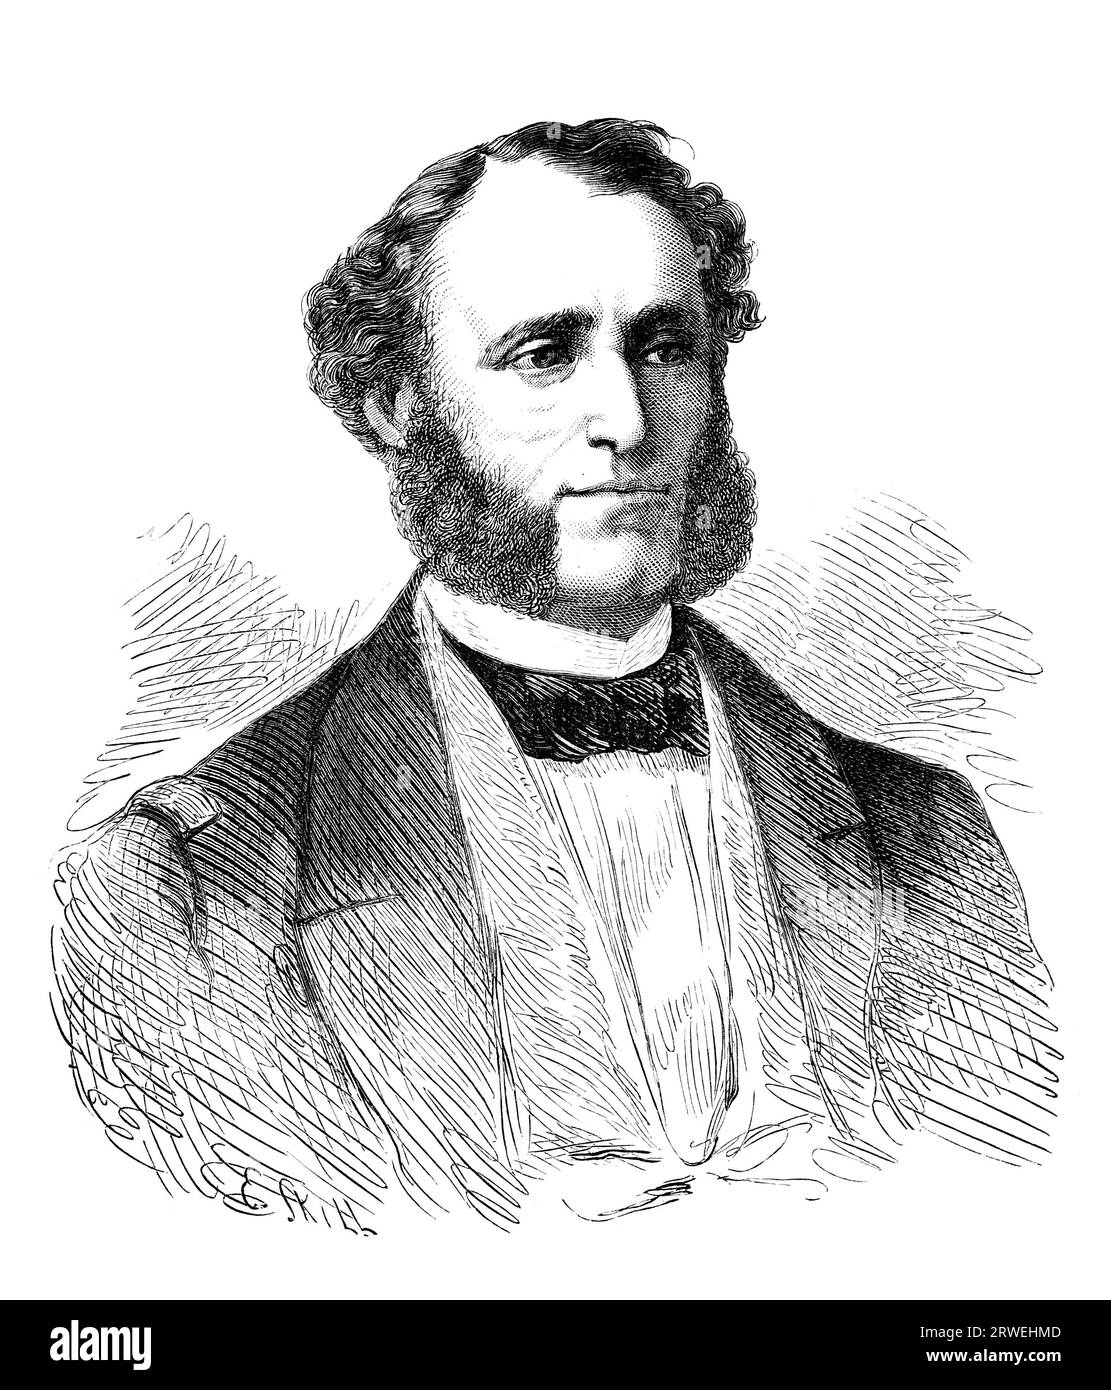 Erik Magnus af Klint (1813-1877), militaire et homme politique suédois. Gravure ancienne d'un magazine imprimé en 1866 Banque D'Images